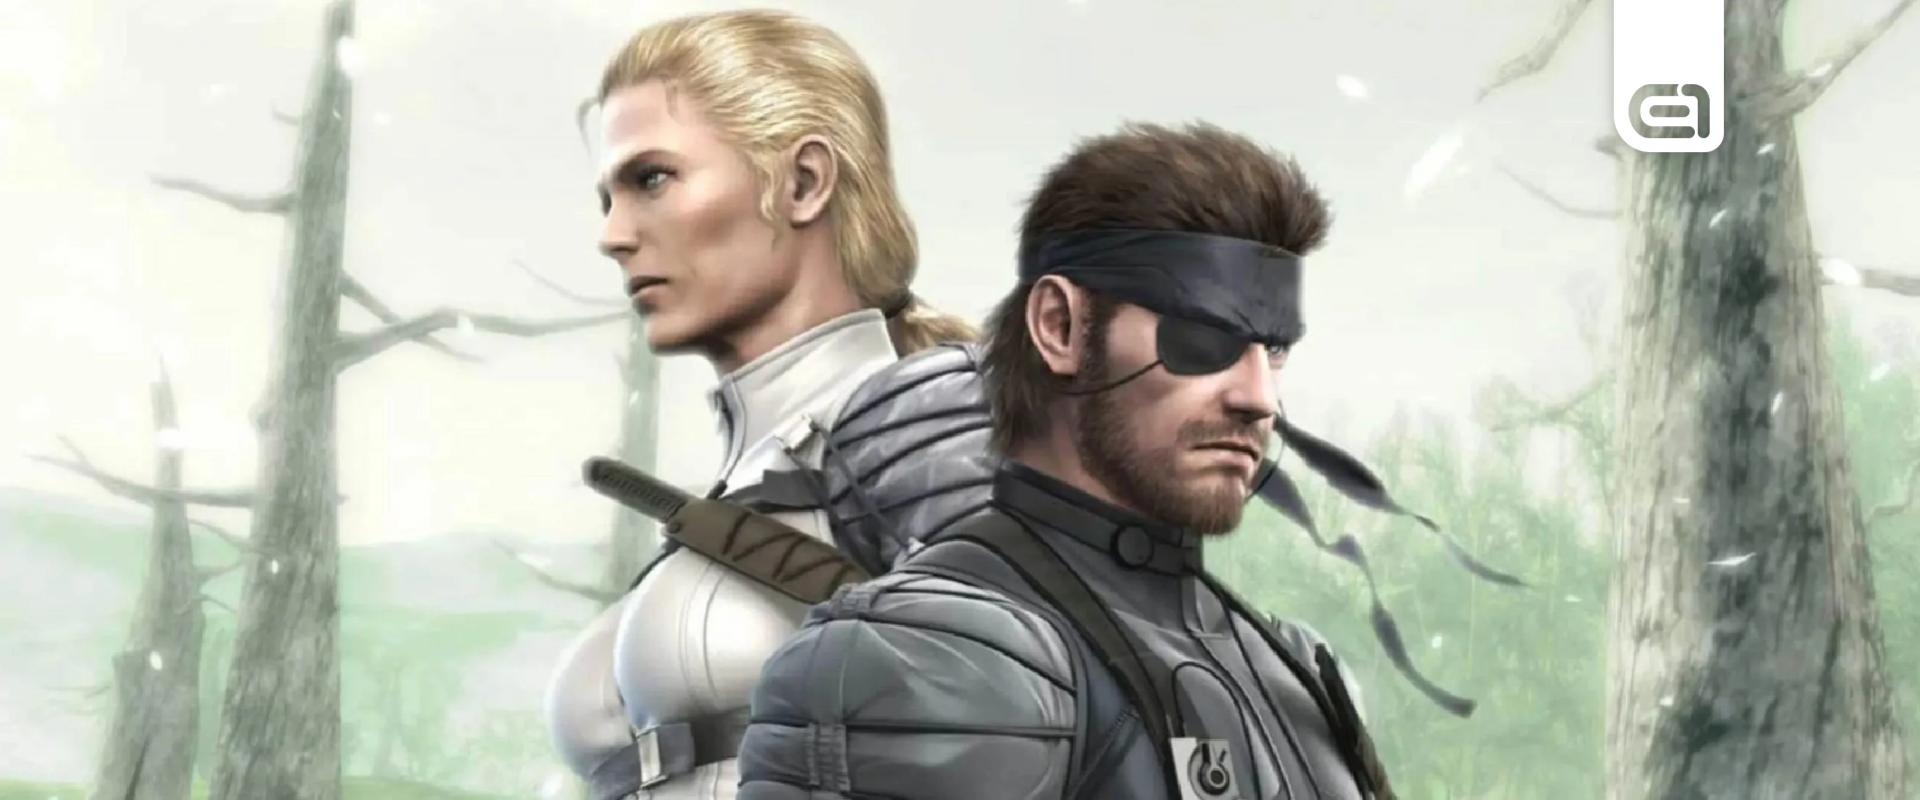 Kiderülhetett a Metal Gear Solid 3: Snake Eater remake megjelenési dátuma